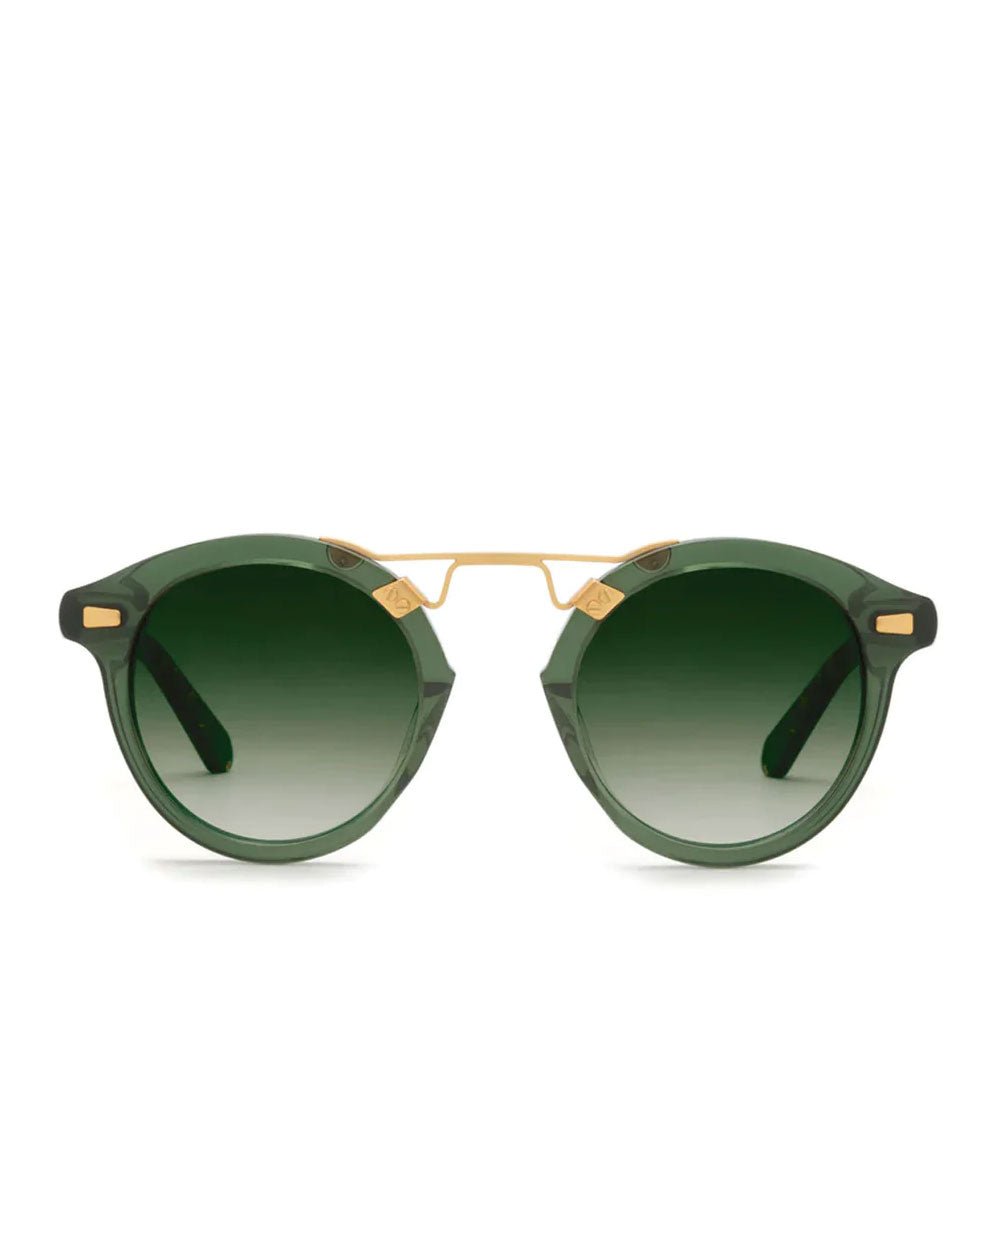 STL II Sunglasses in Bottle Green